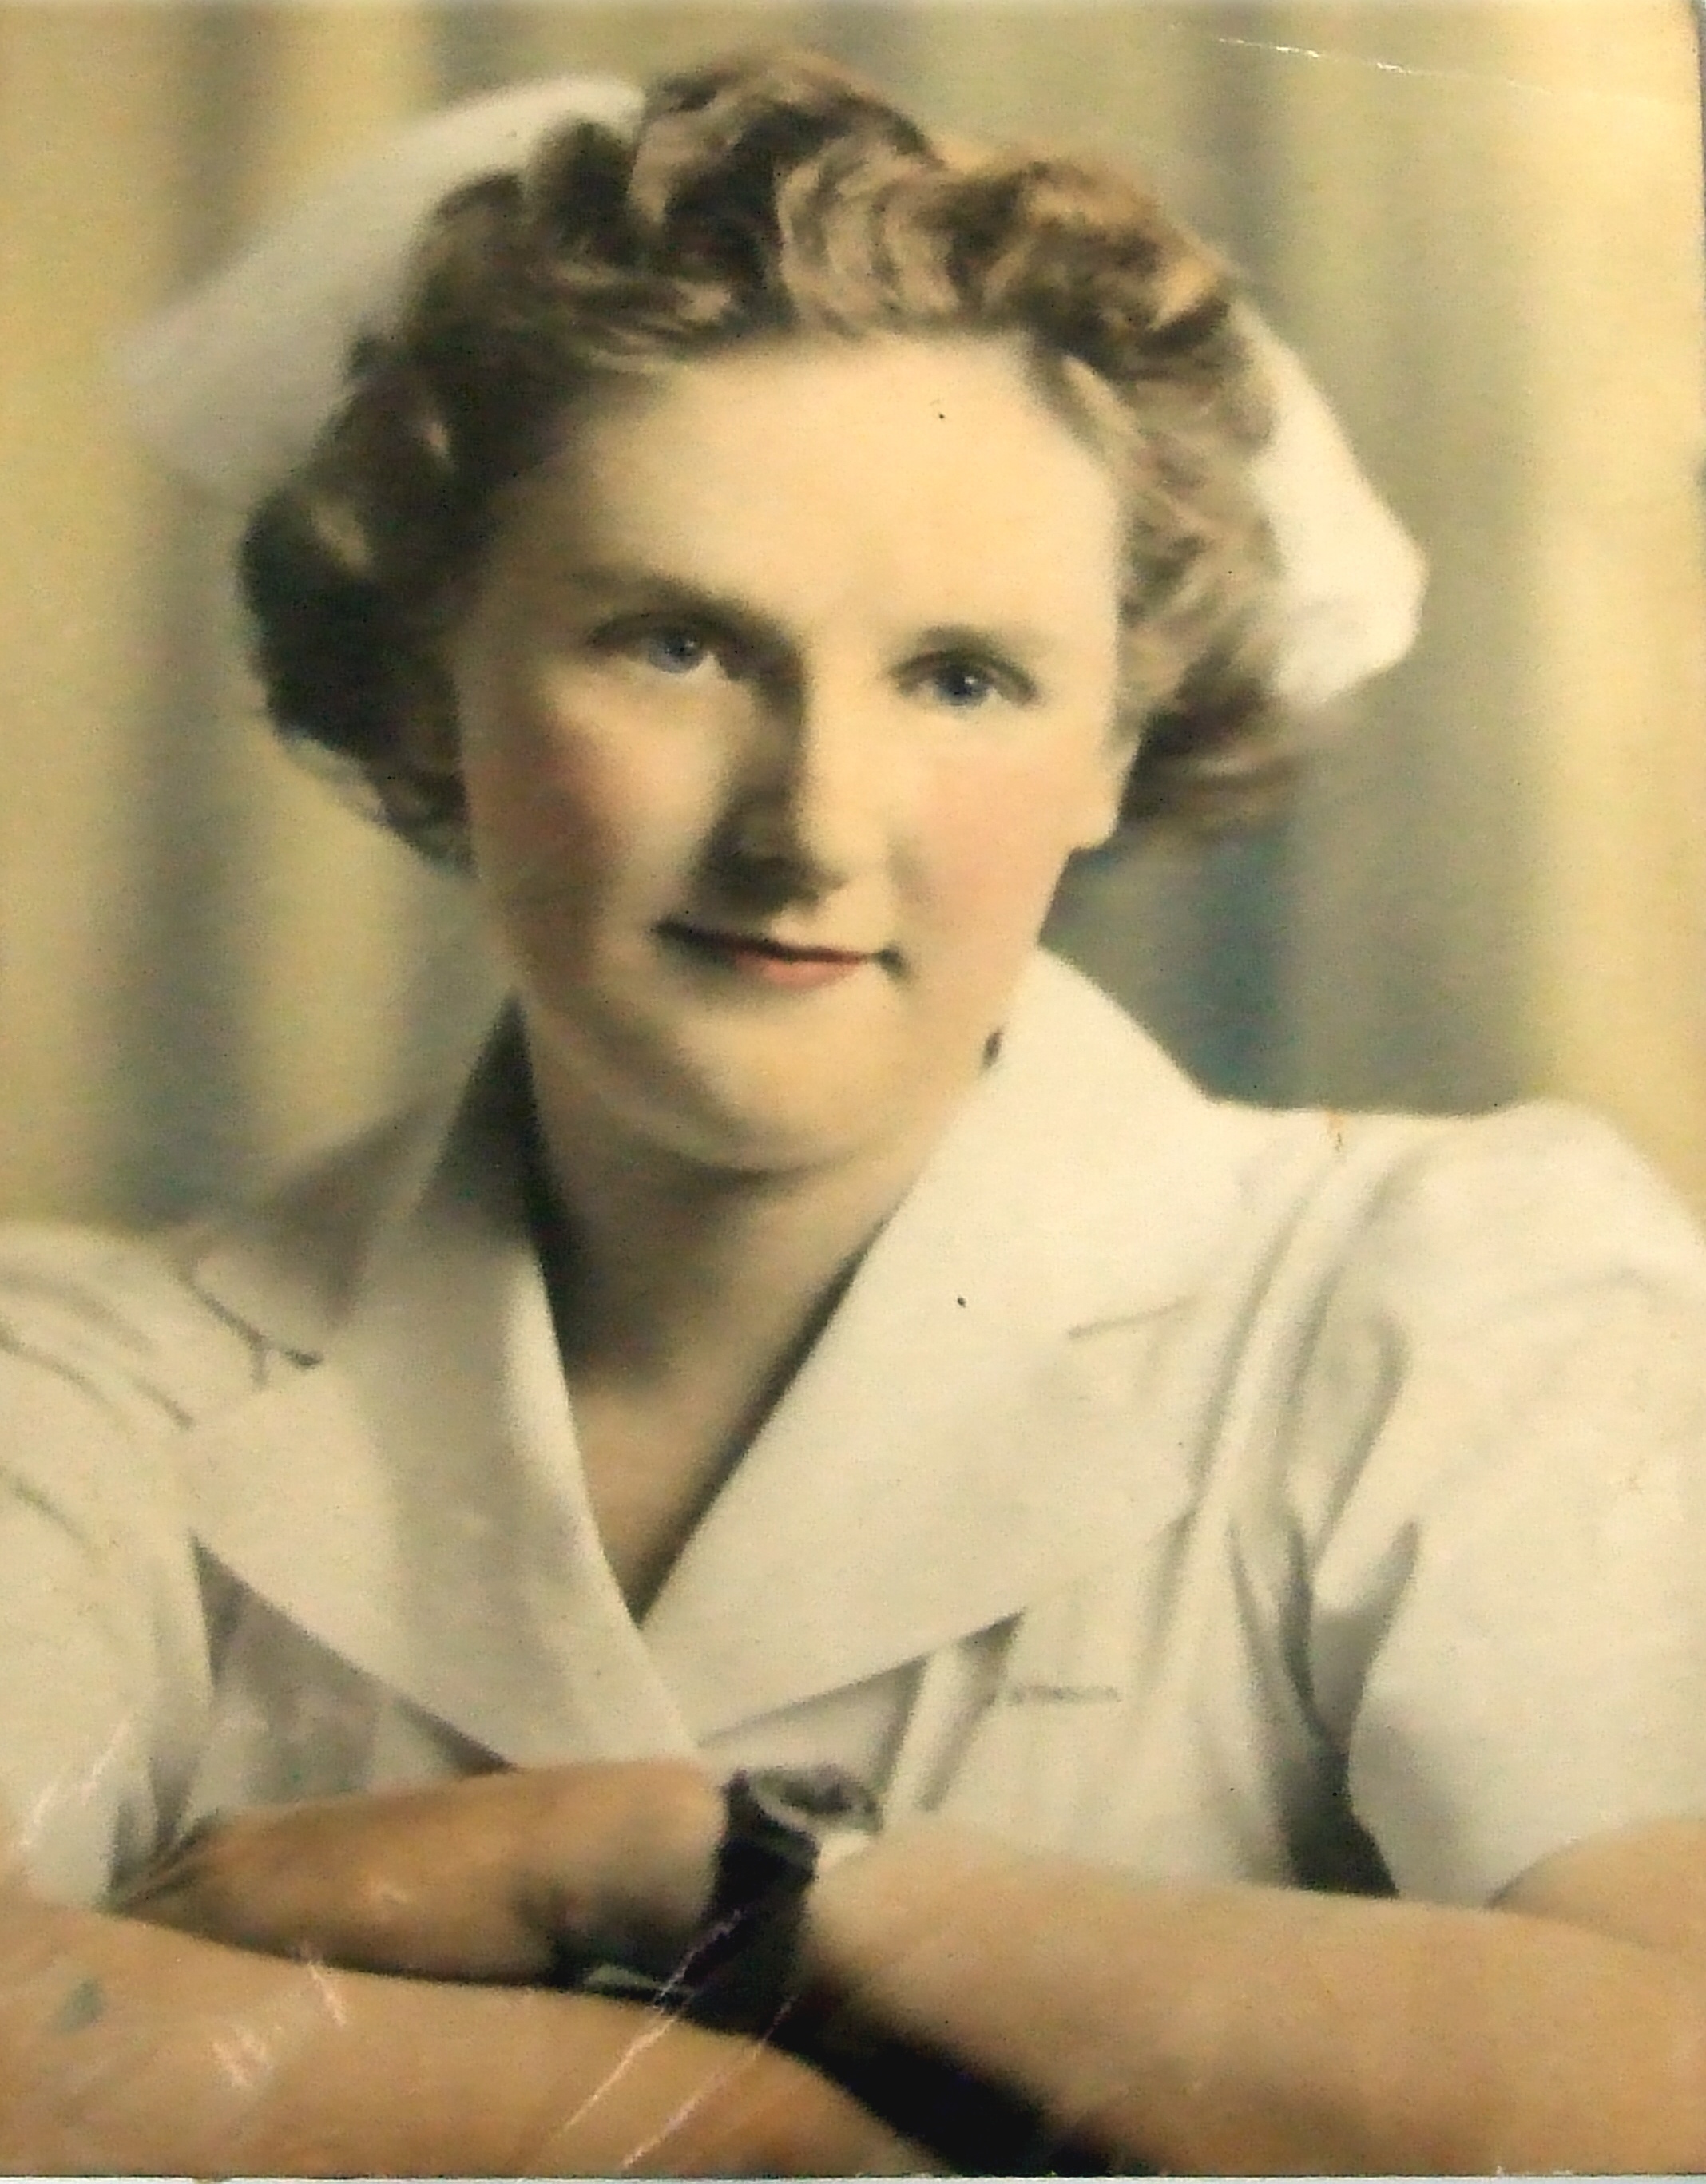 Harriett in hospital uniform